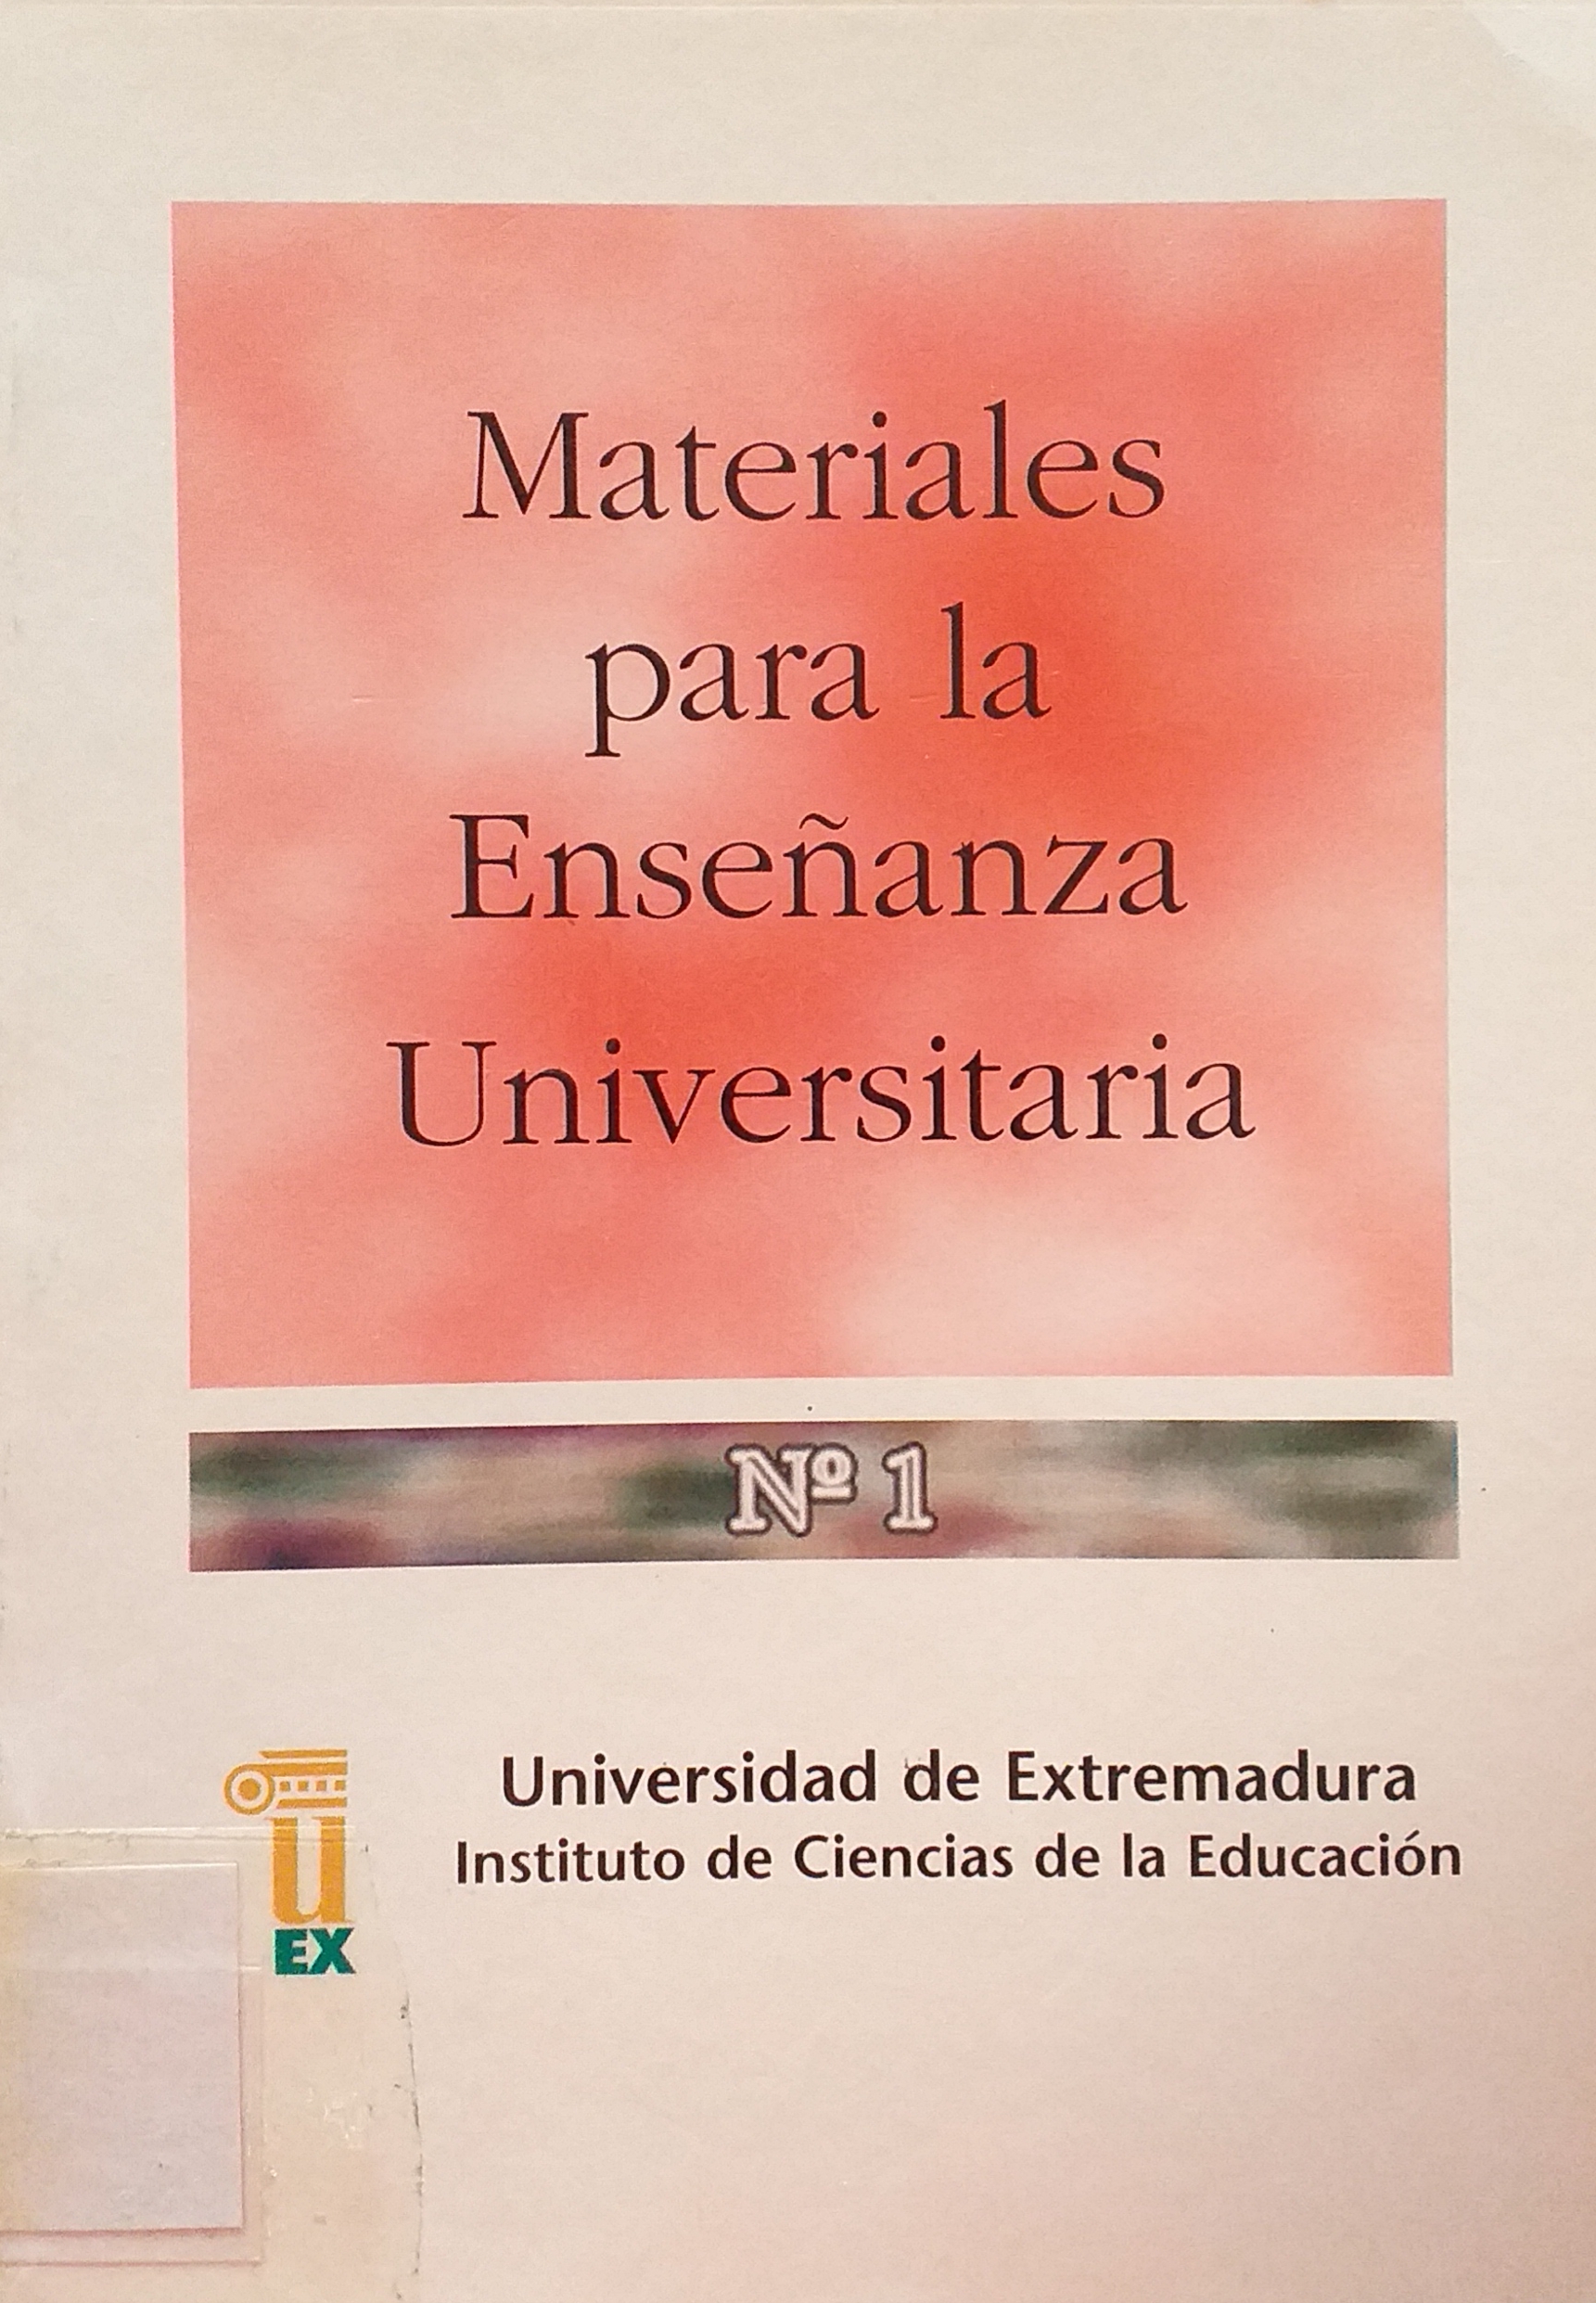 Imagen de portada del libro Materiales para la enseñanza universitaria